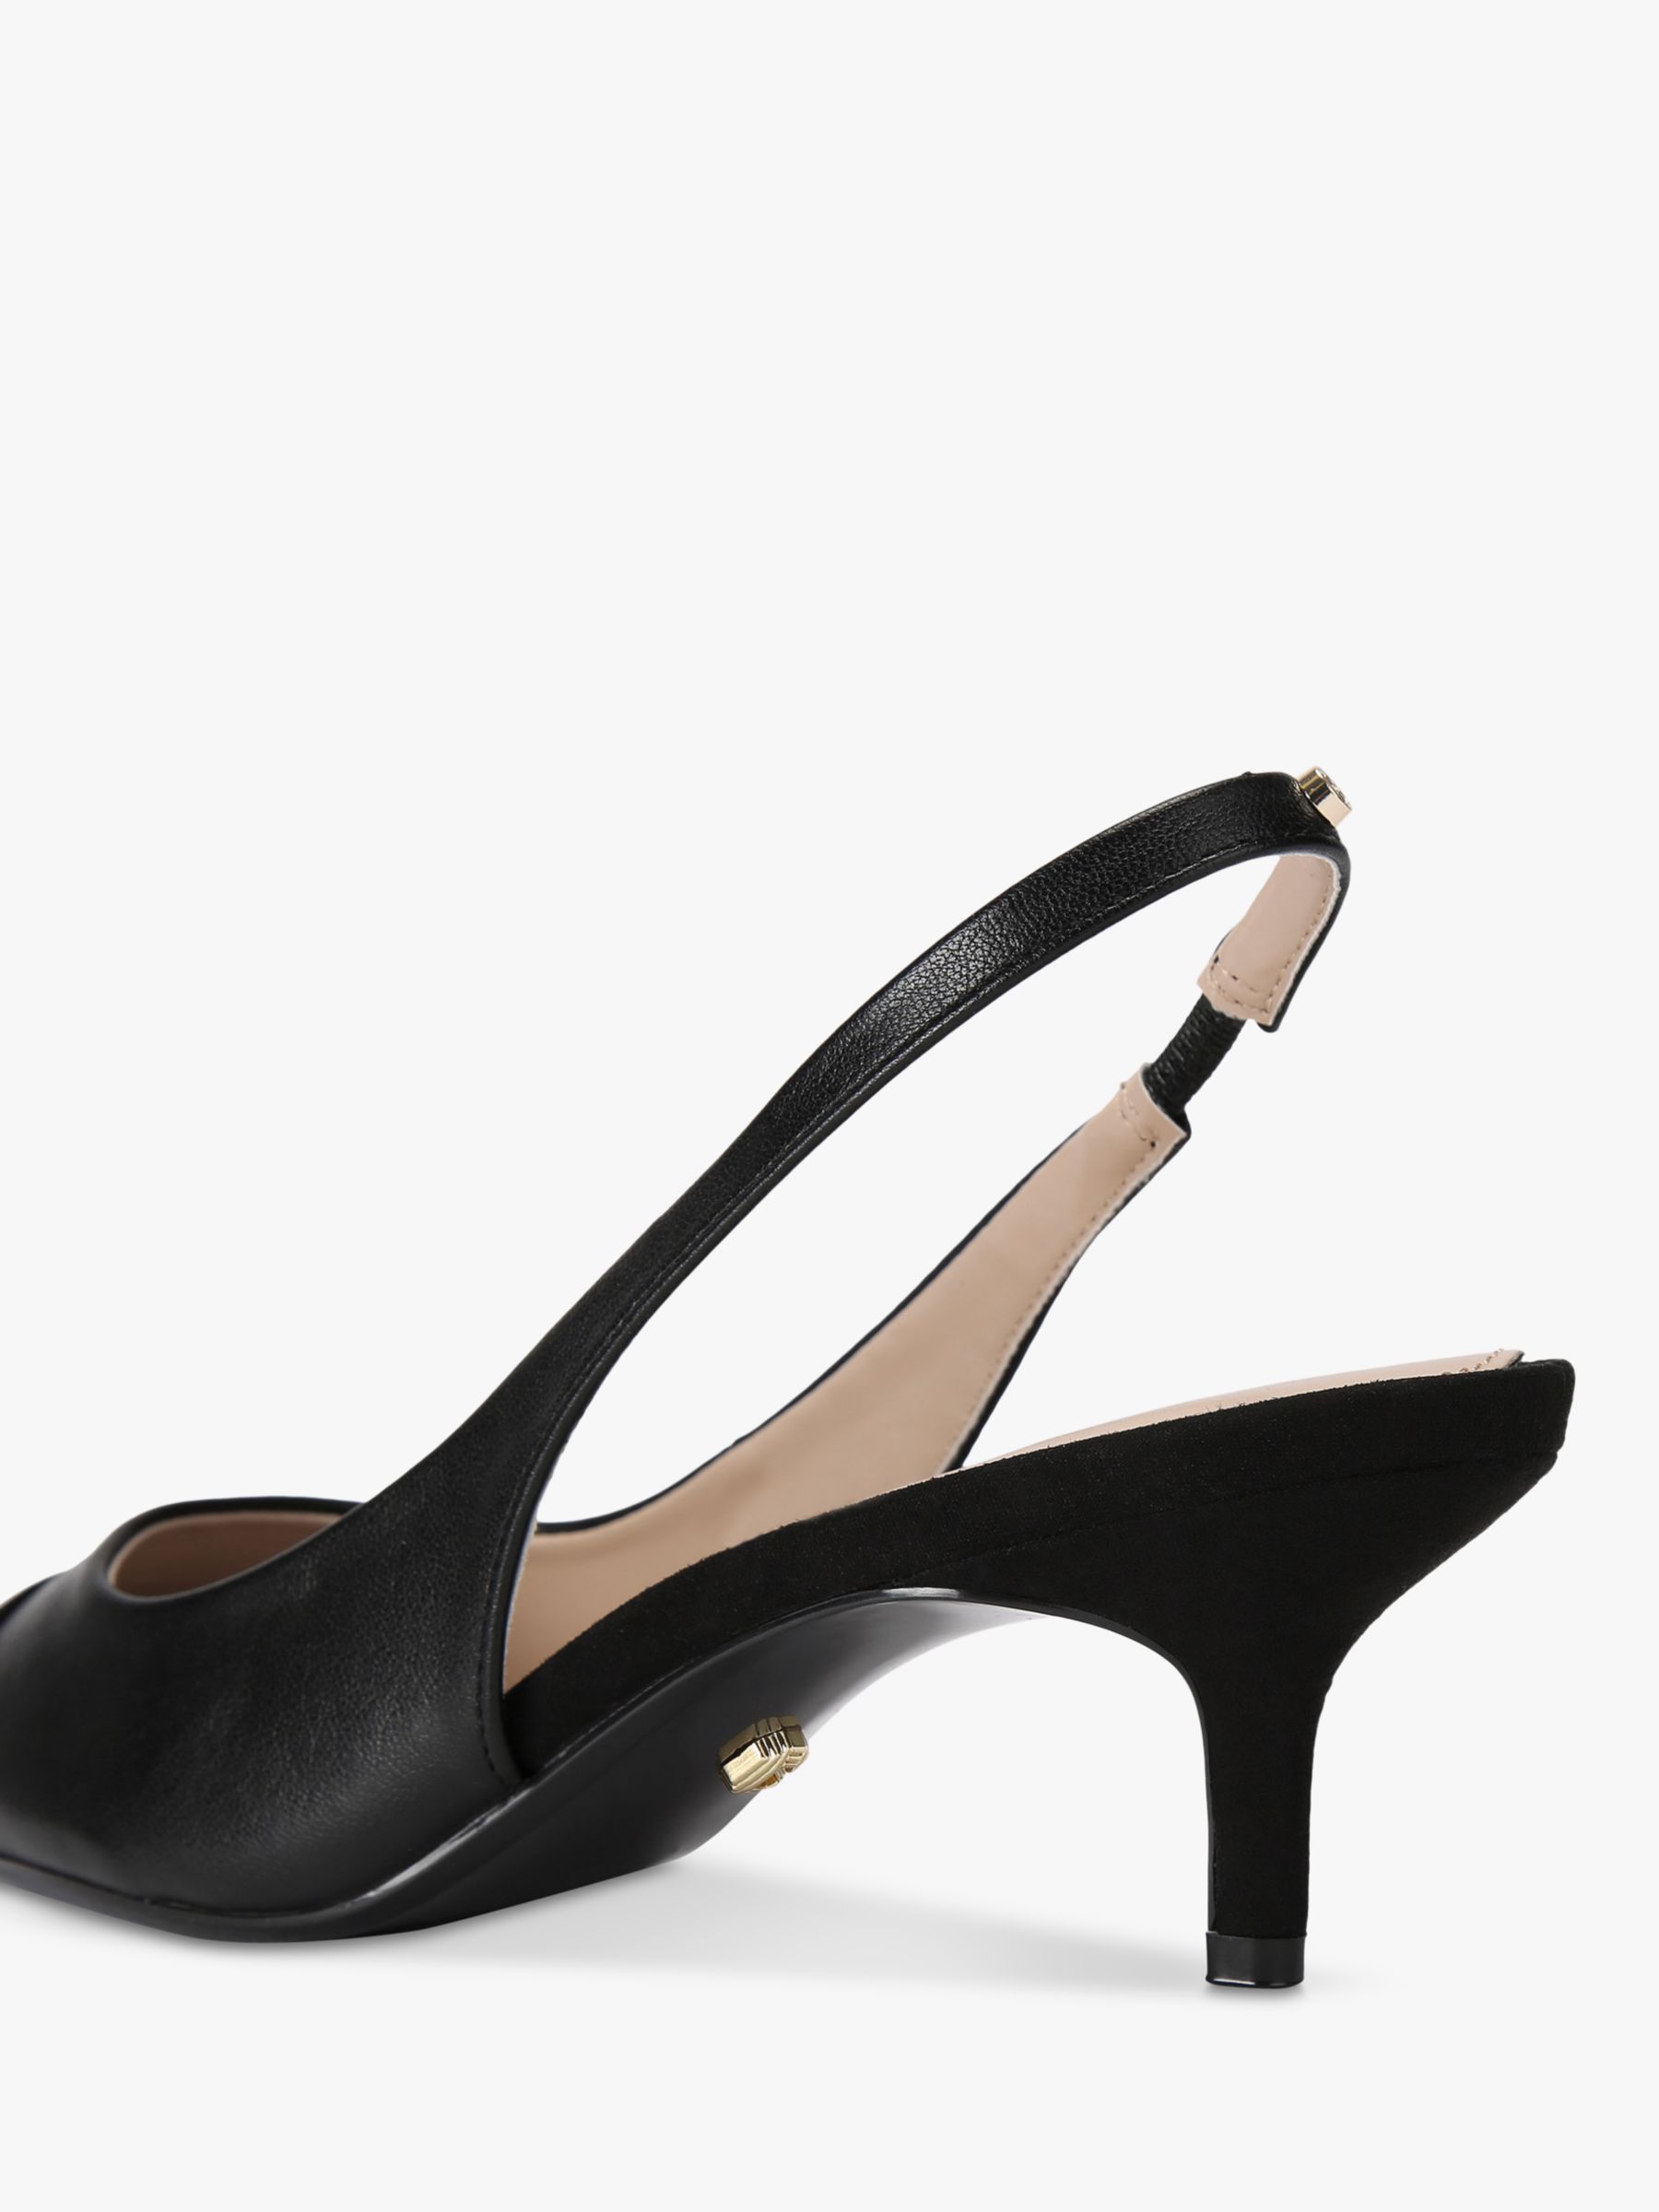 Carvela Clara Slingback Court Shoes, Black, 3